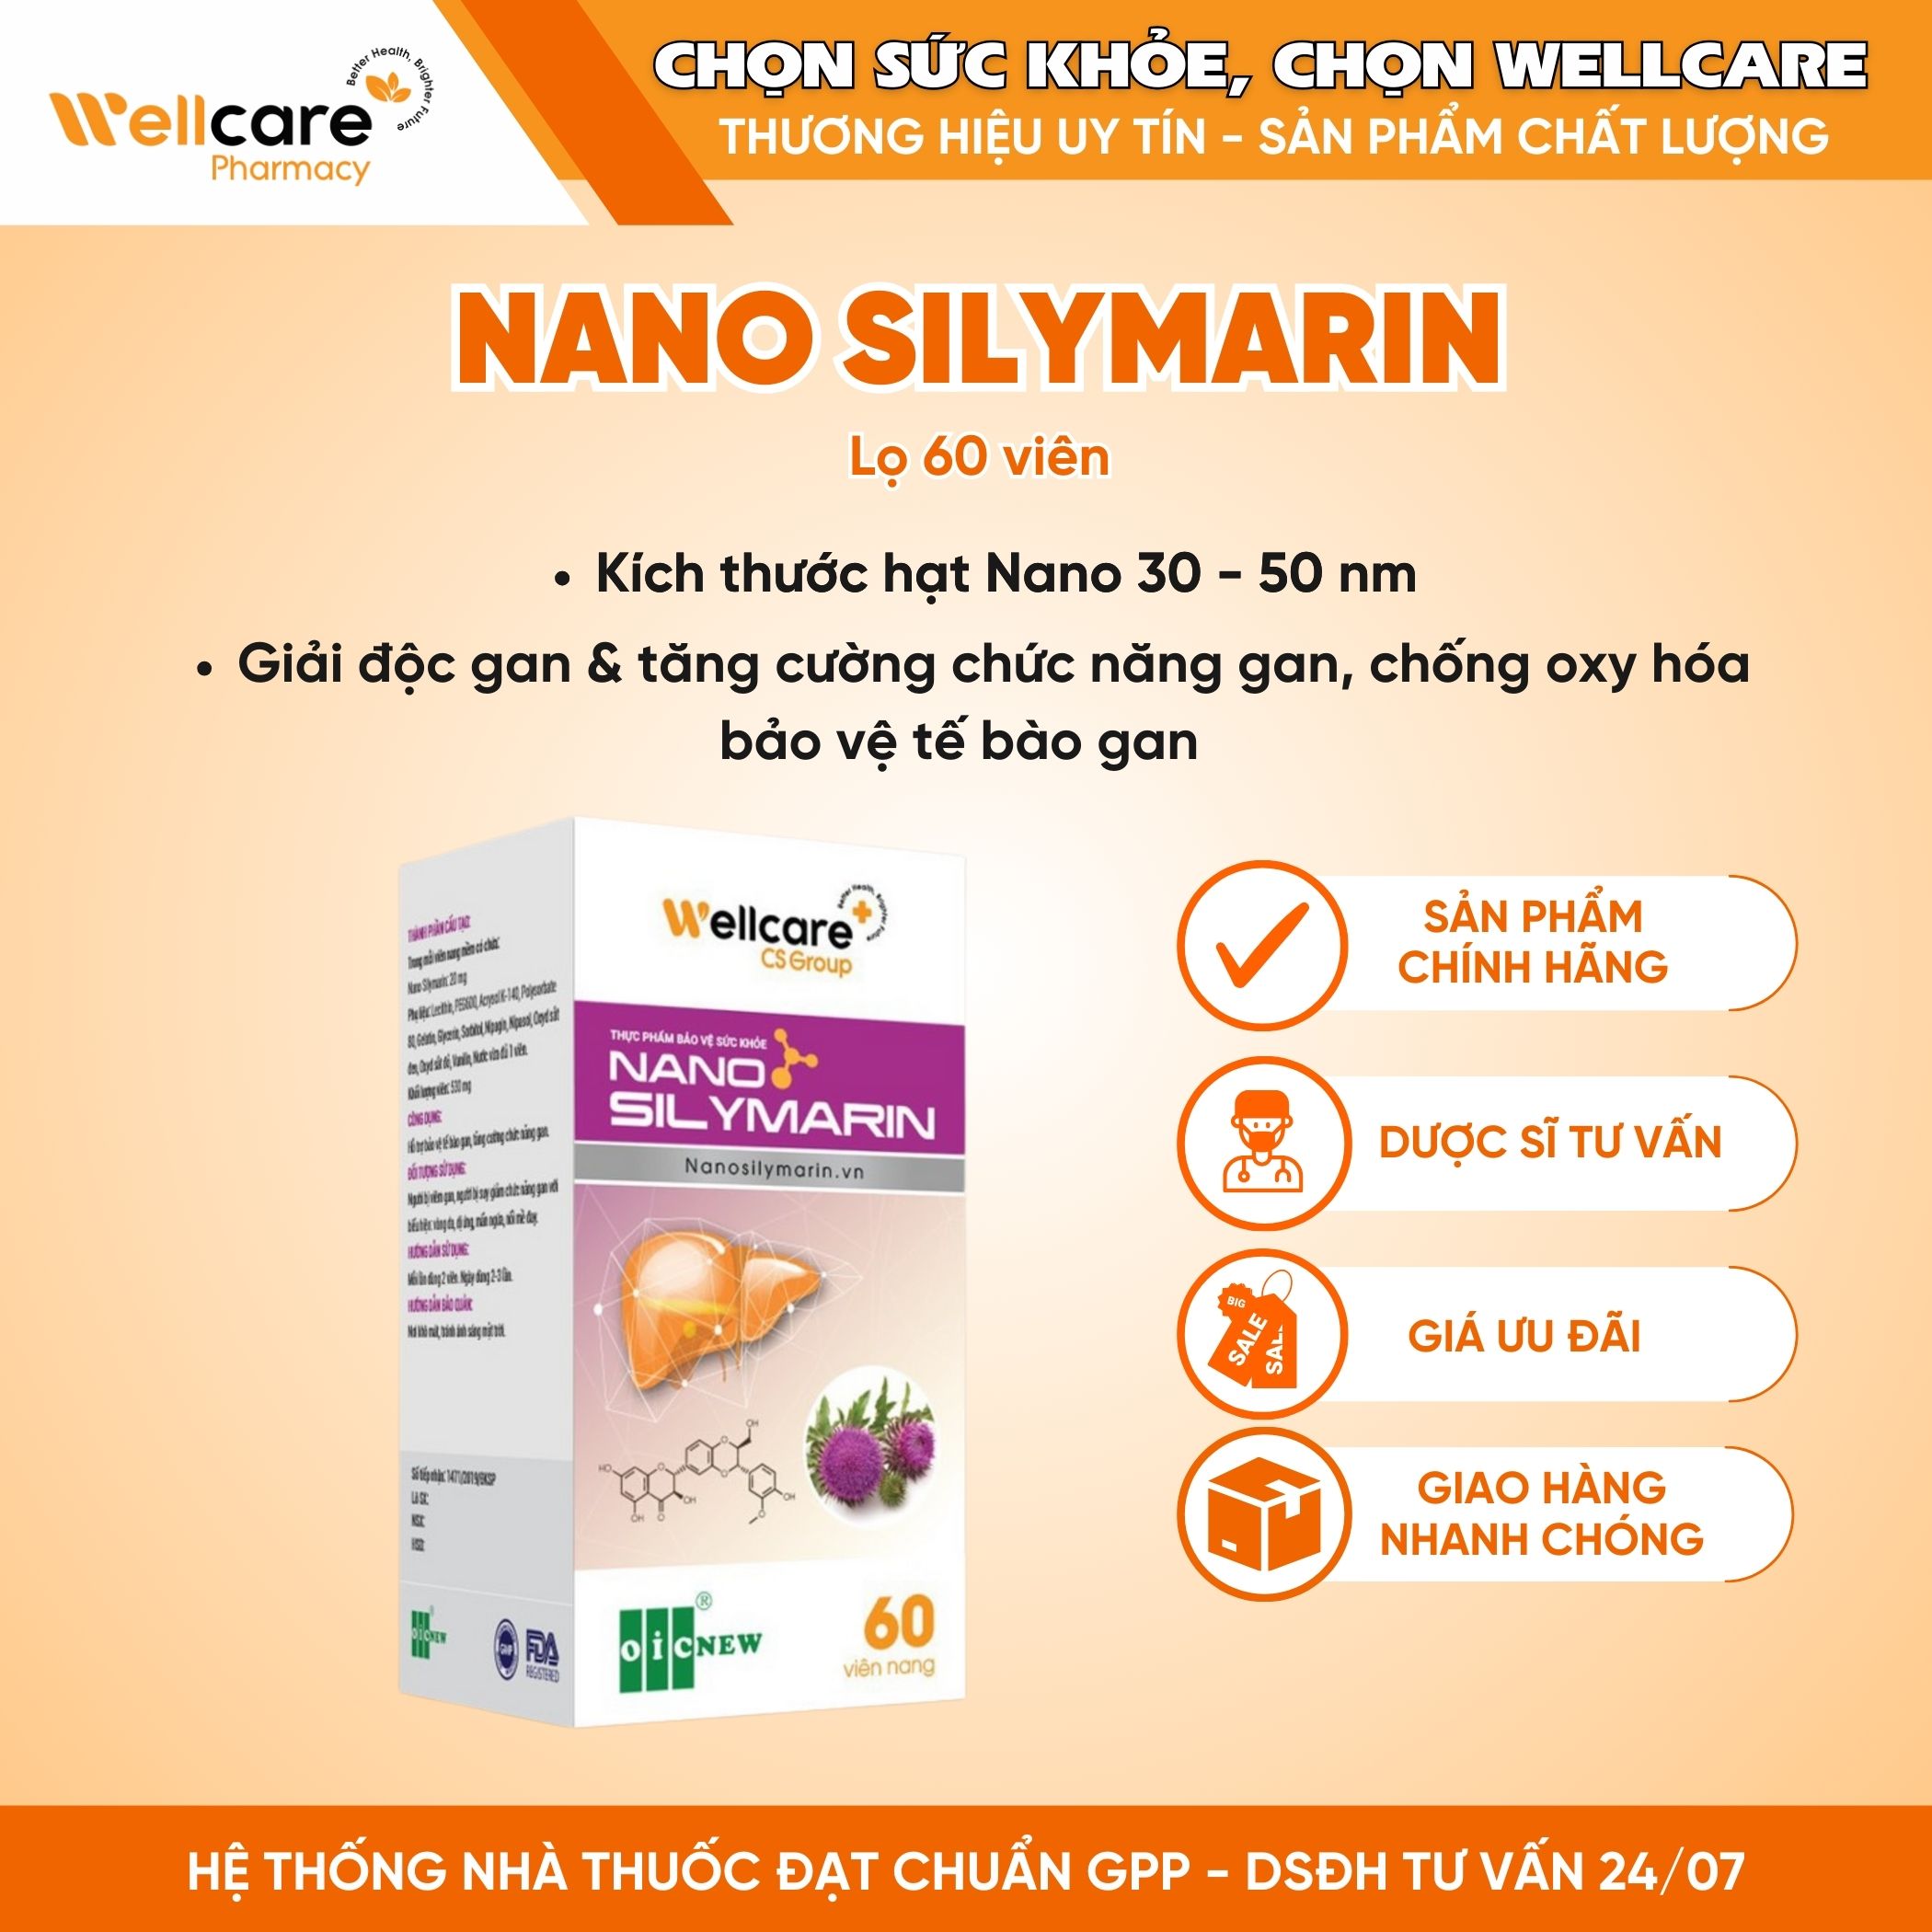 Nano Silymarin OIC NEW – Hỗ trợ bảo vệ gan, tăng cường chức năng gan (Hộp 30 viên)